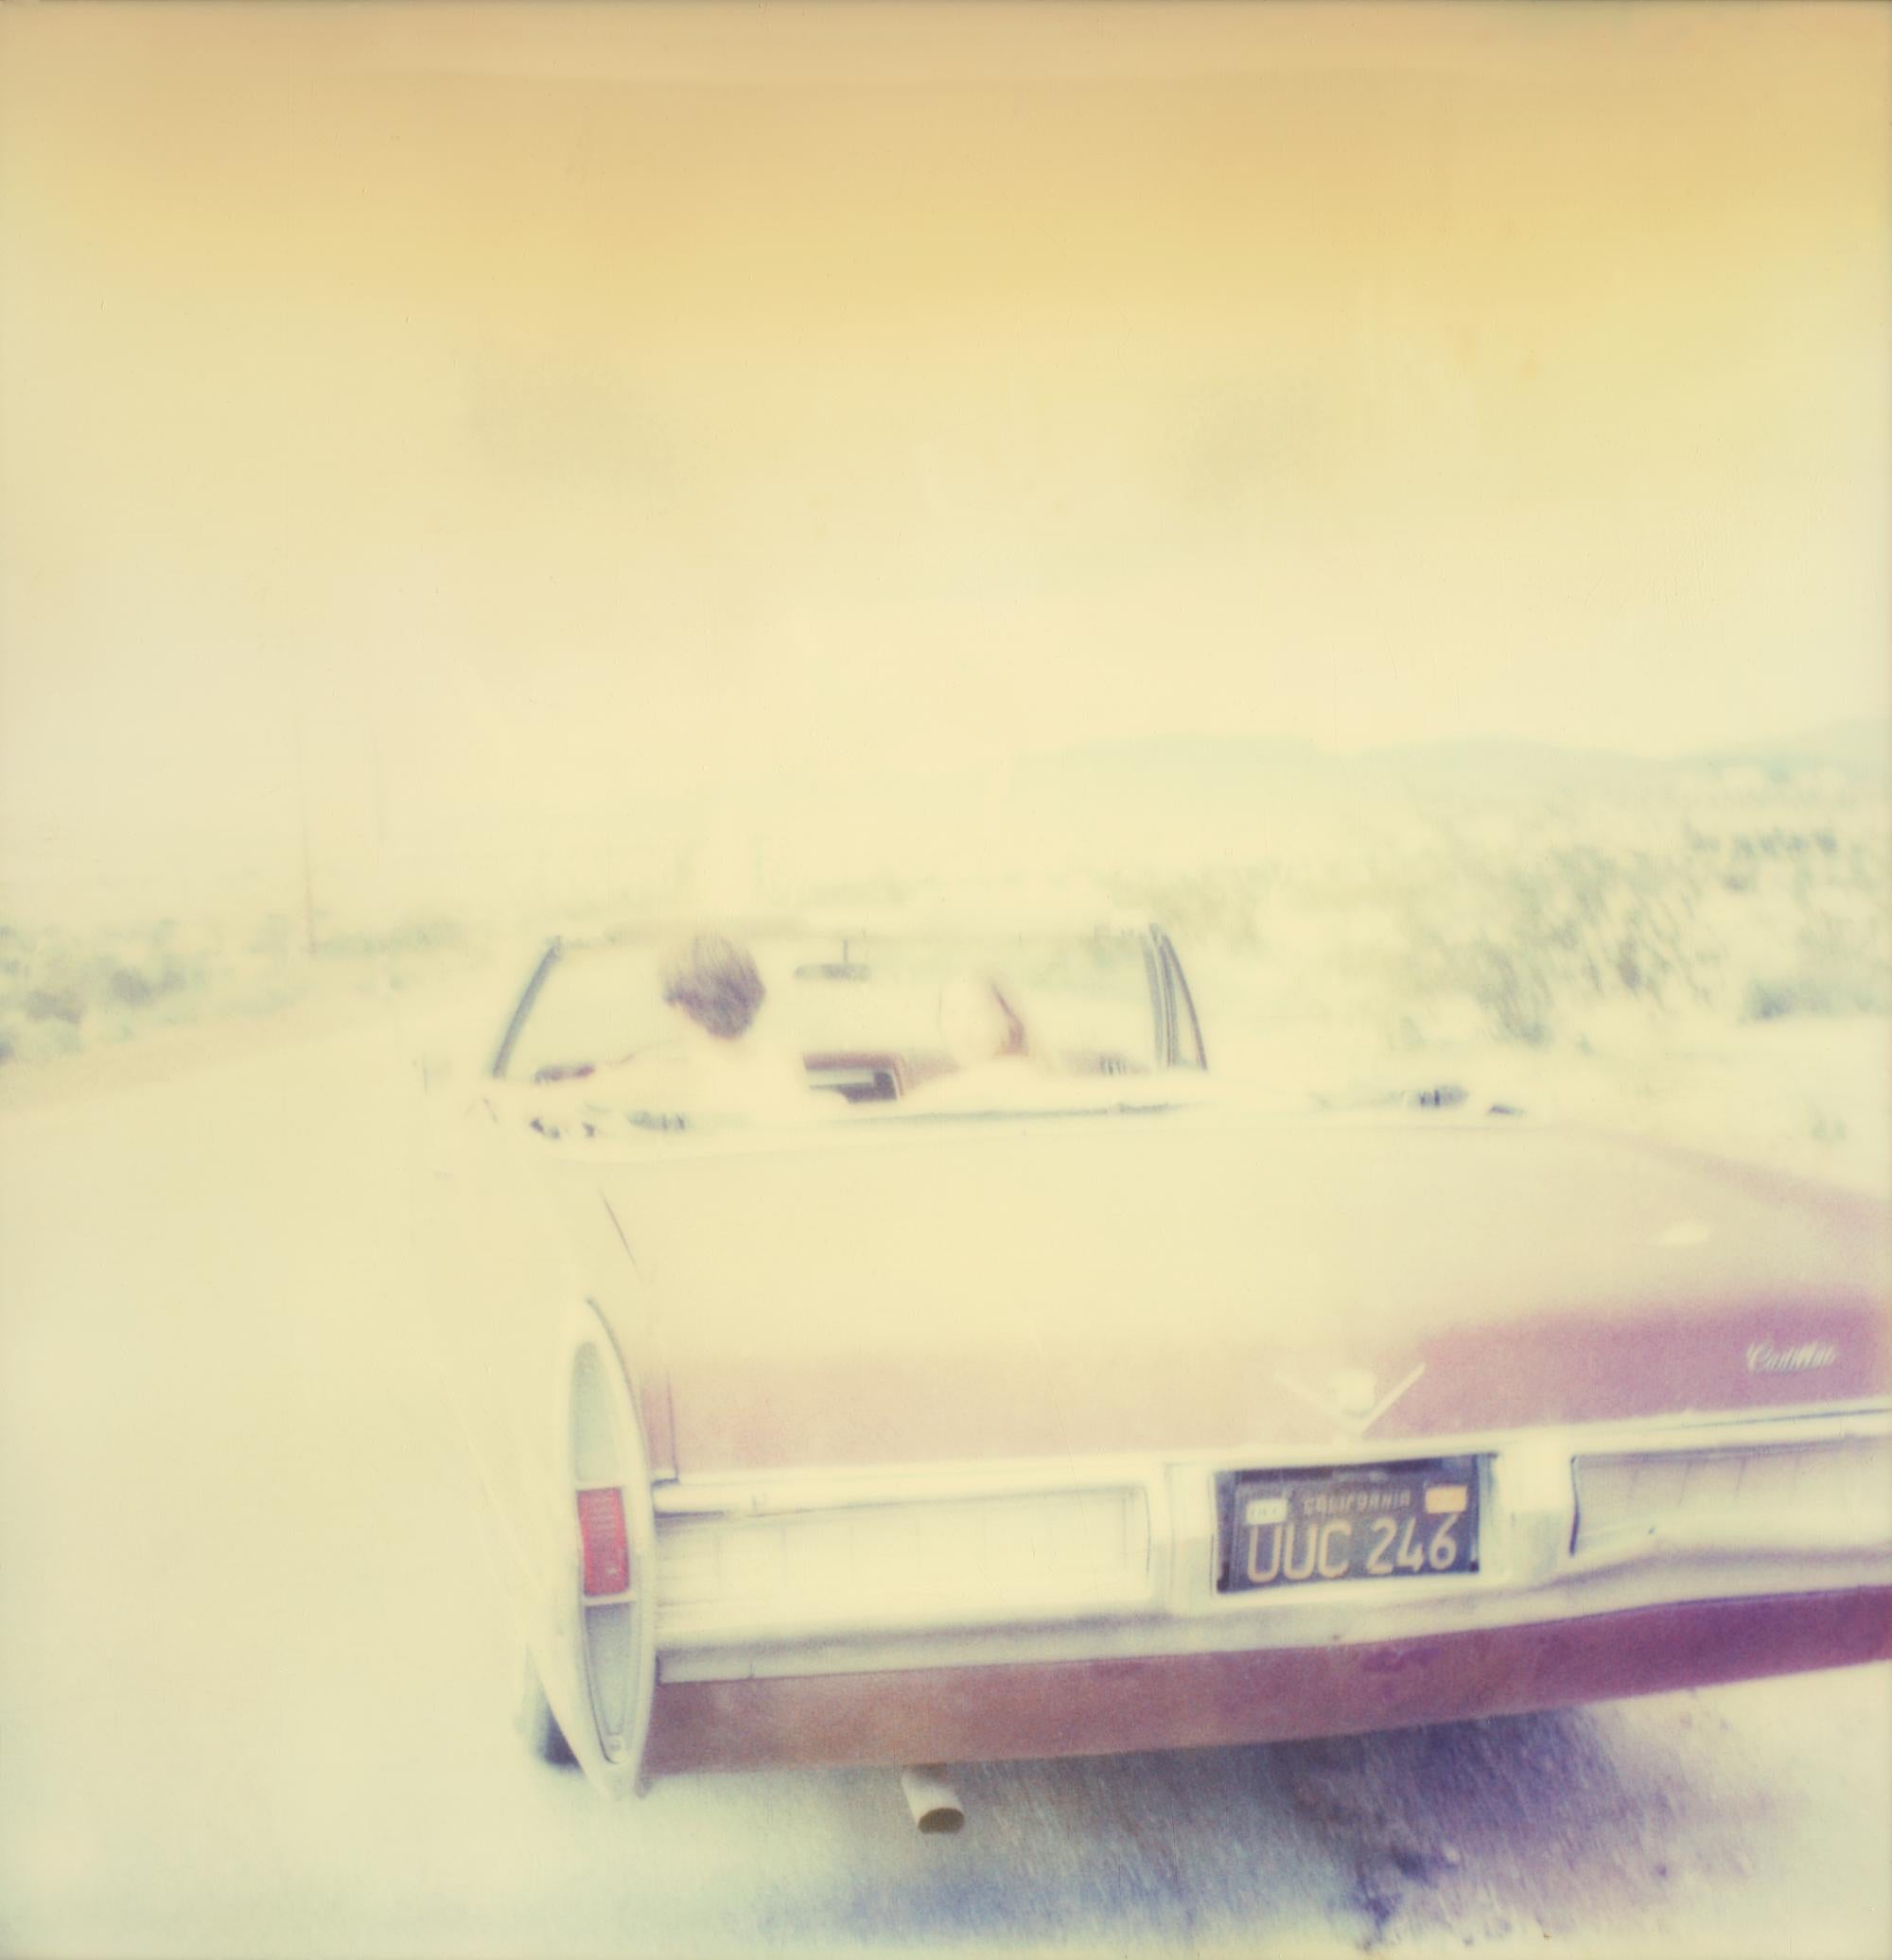 Leaving III (Sidewinder) - Polaroid, 21st Century, Contemporary - Photograph by Stefanie Schneider